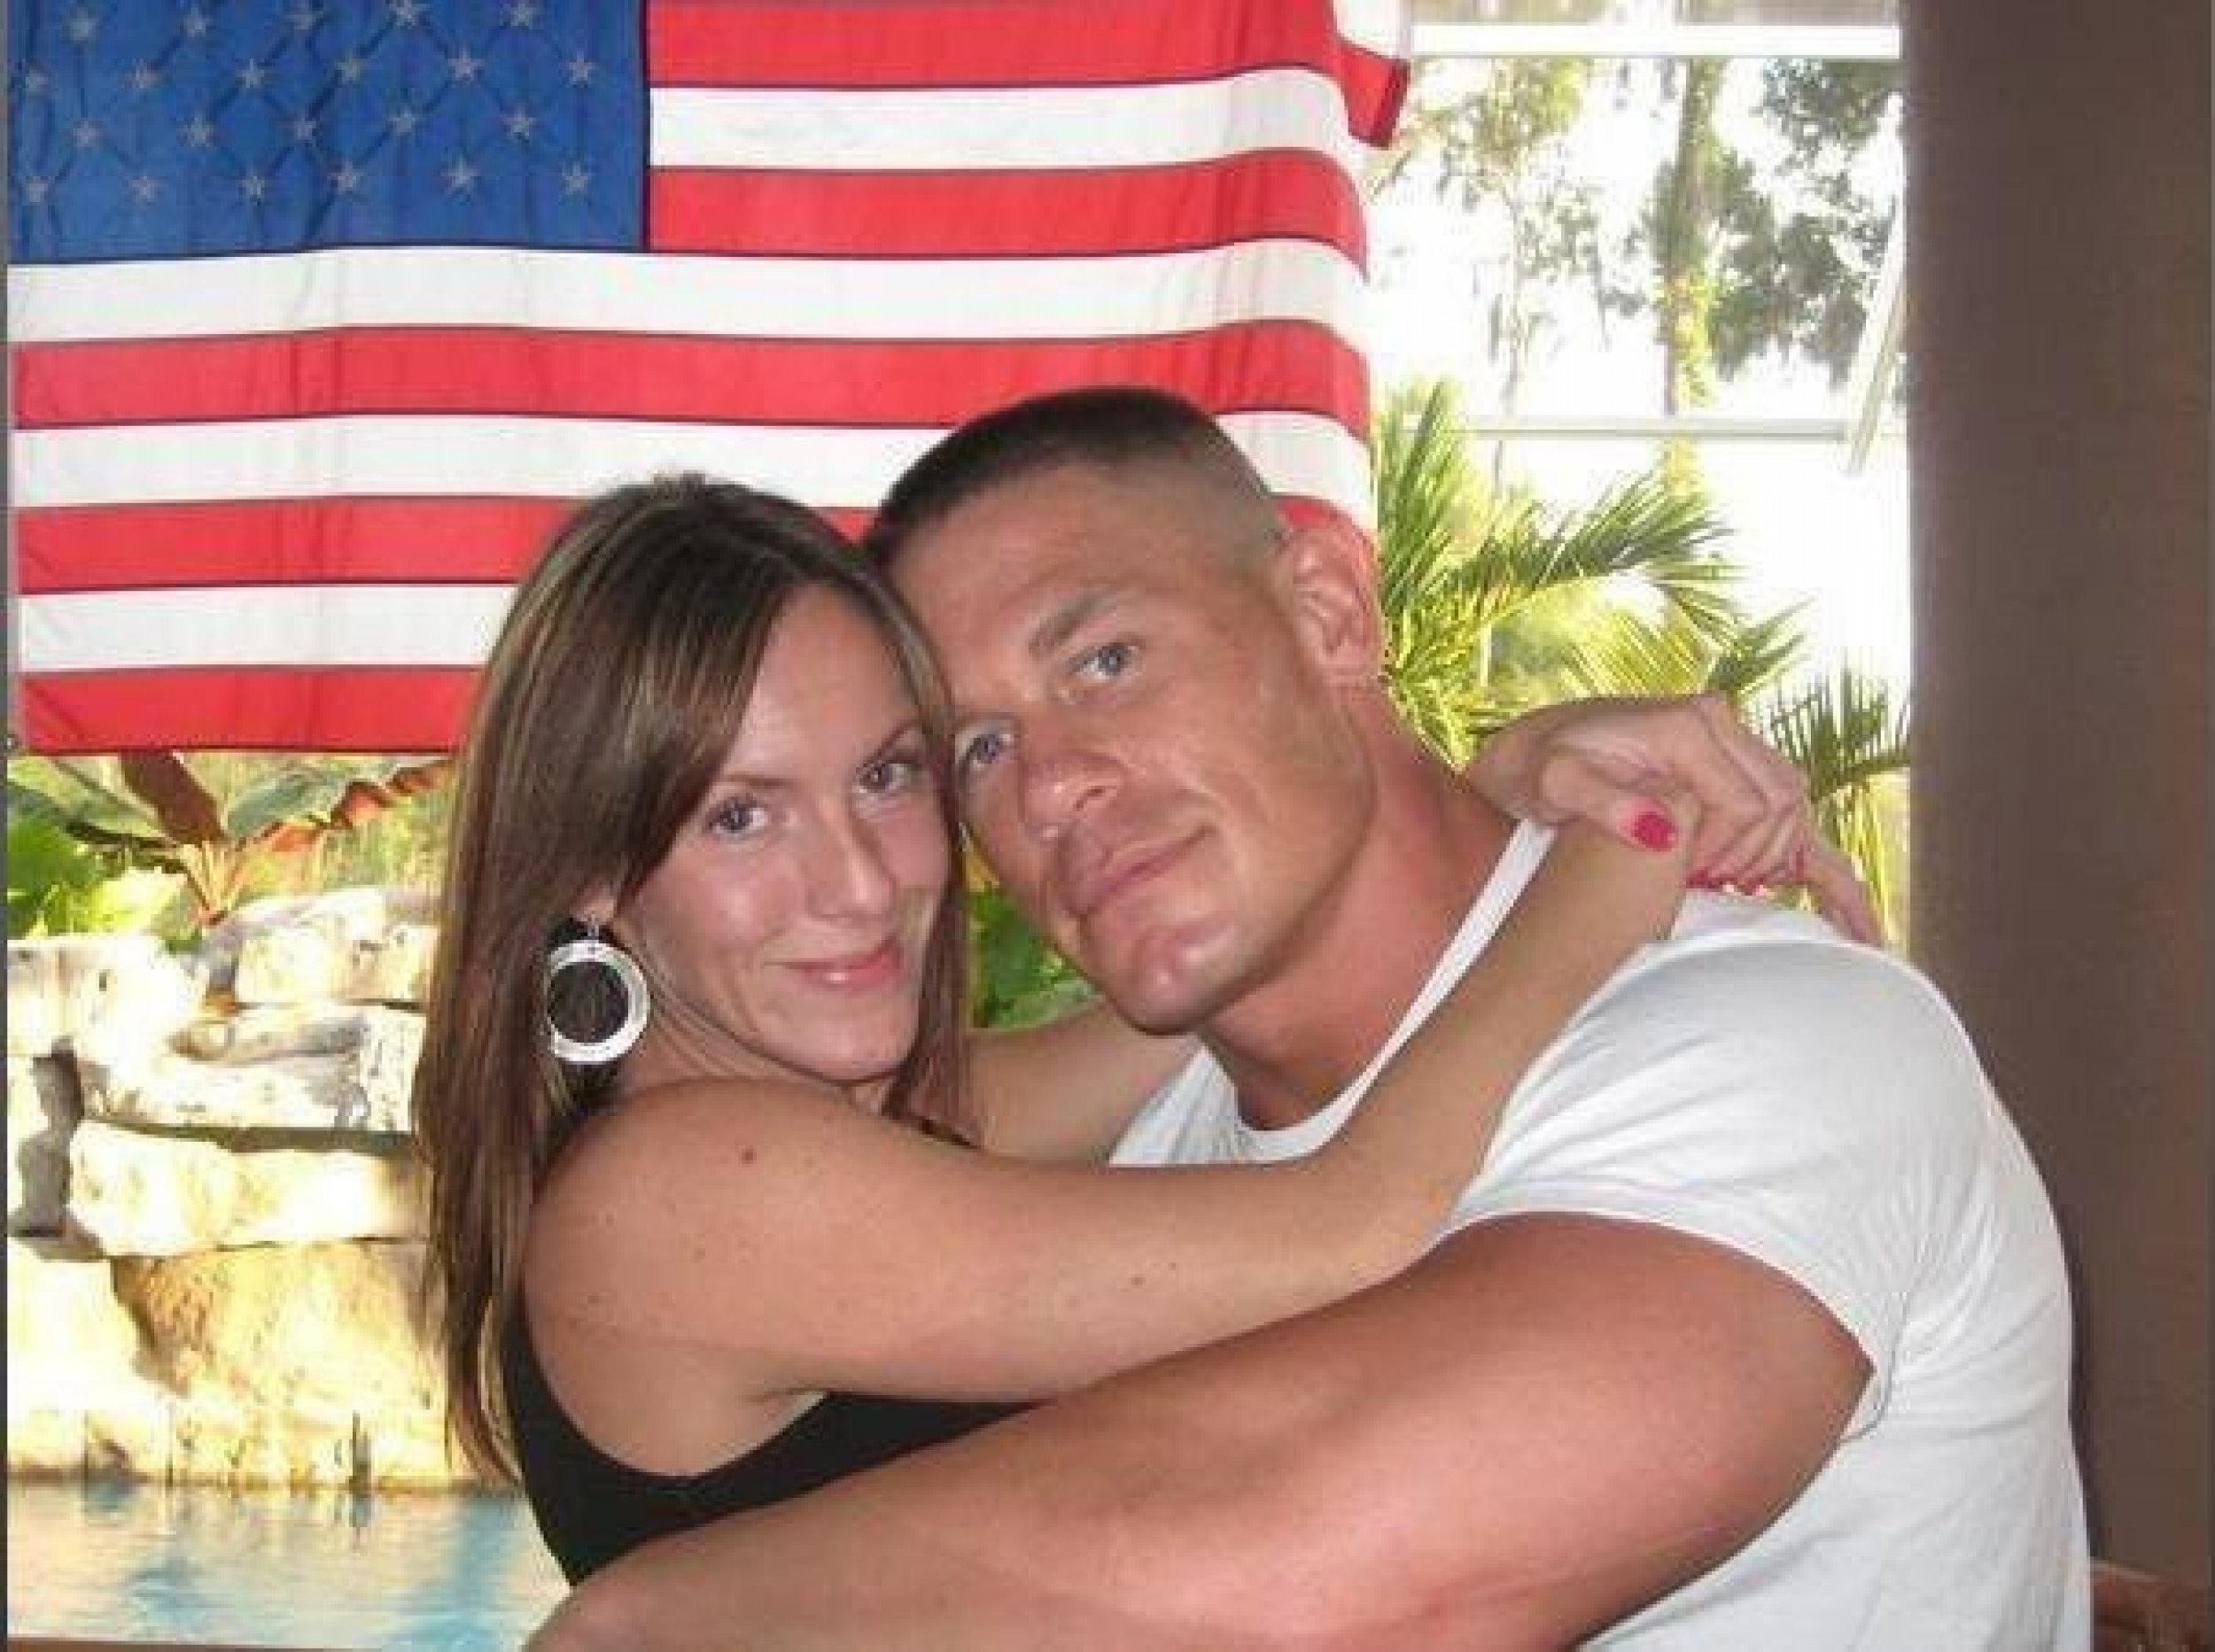 John Cena and Elizabeth Huberdeau got married on July 11, 2009.